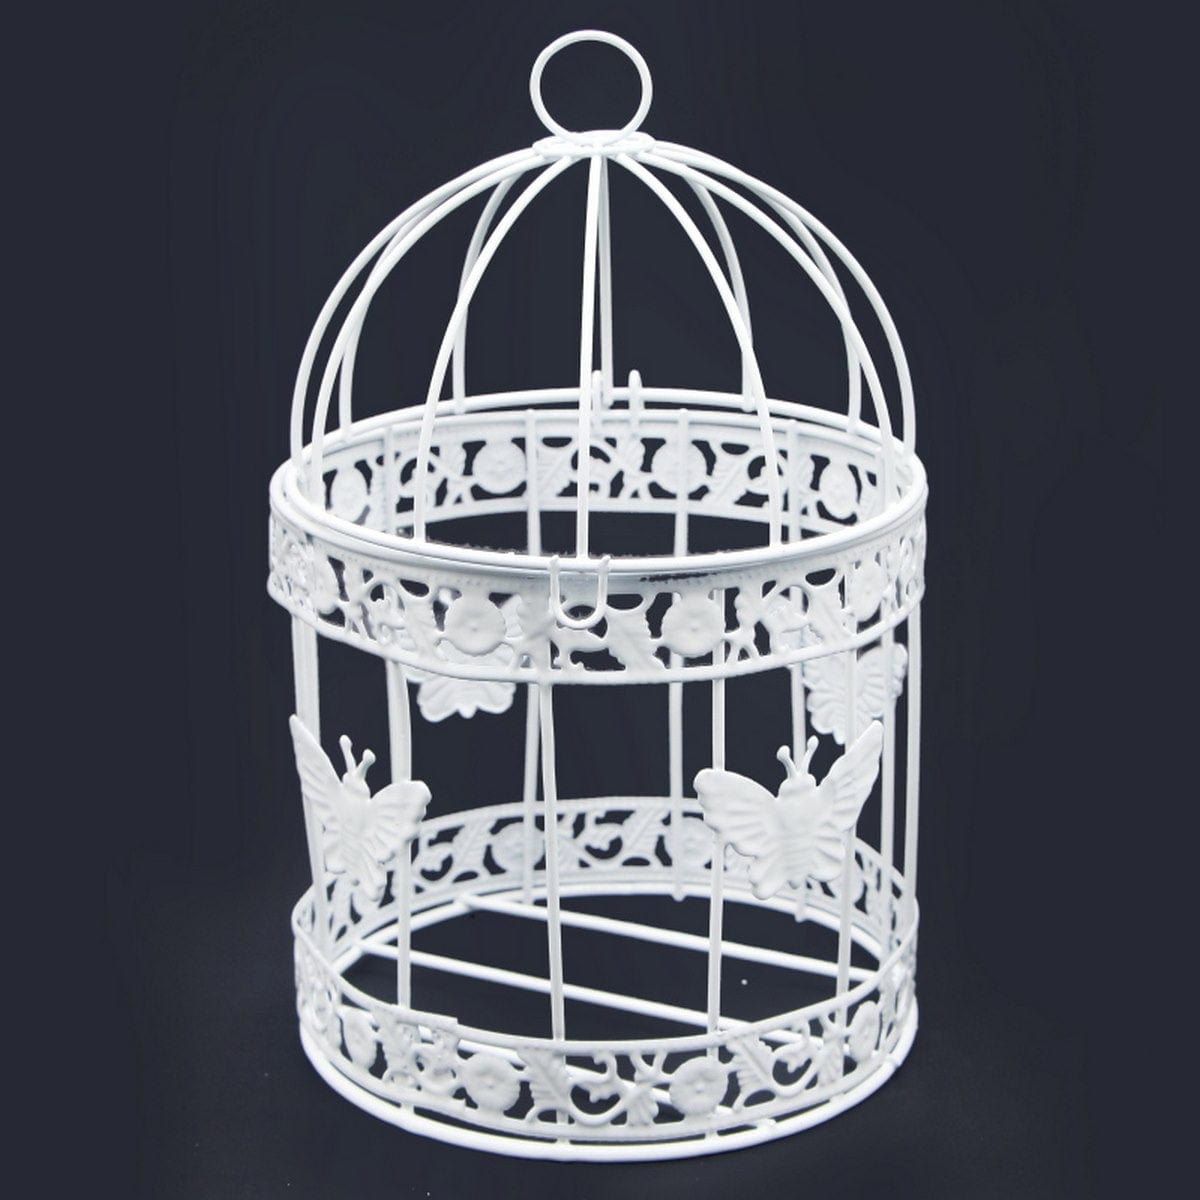 jags-mumbai Artificial Bird & Cage Medium Bird Cage Set of 3